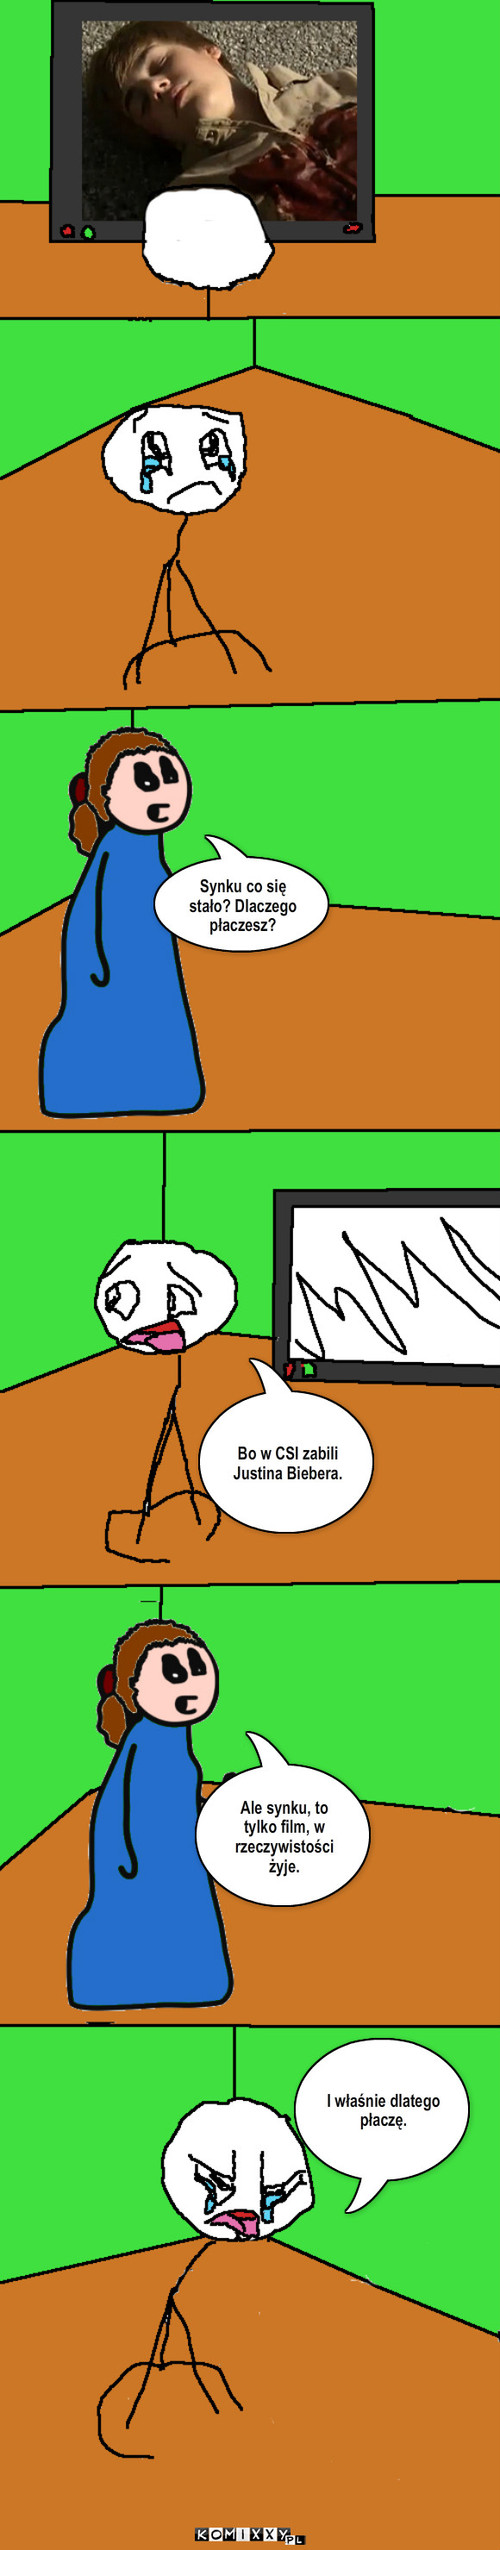 Oglądanie Biebera w CSI – Bo w CSI zabili Justina Biebera. I właśnie dlatego płaczę. Synku co się stało? Dlaczego płaczesz? Ale synku, to tylko film, w rzeczywistości żyje. 